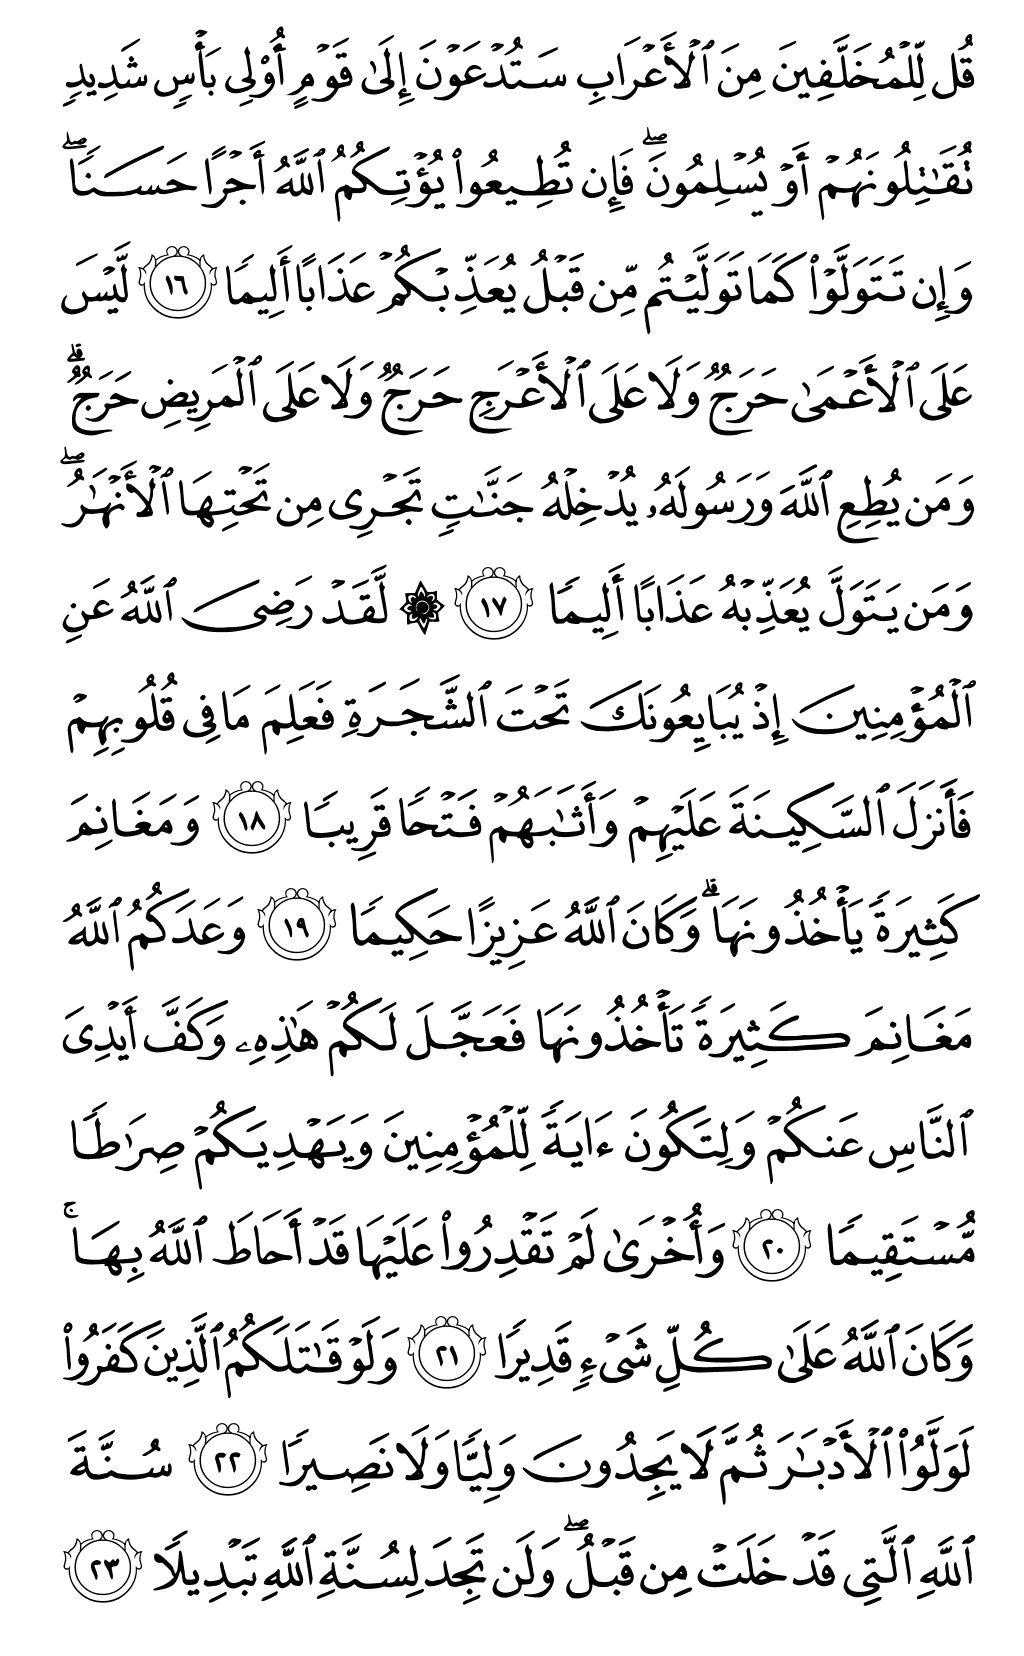 الصفحة رقم 513 من القرآن الكريم